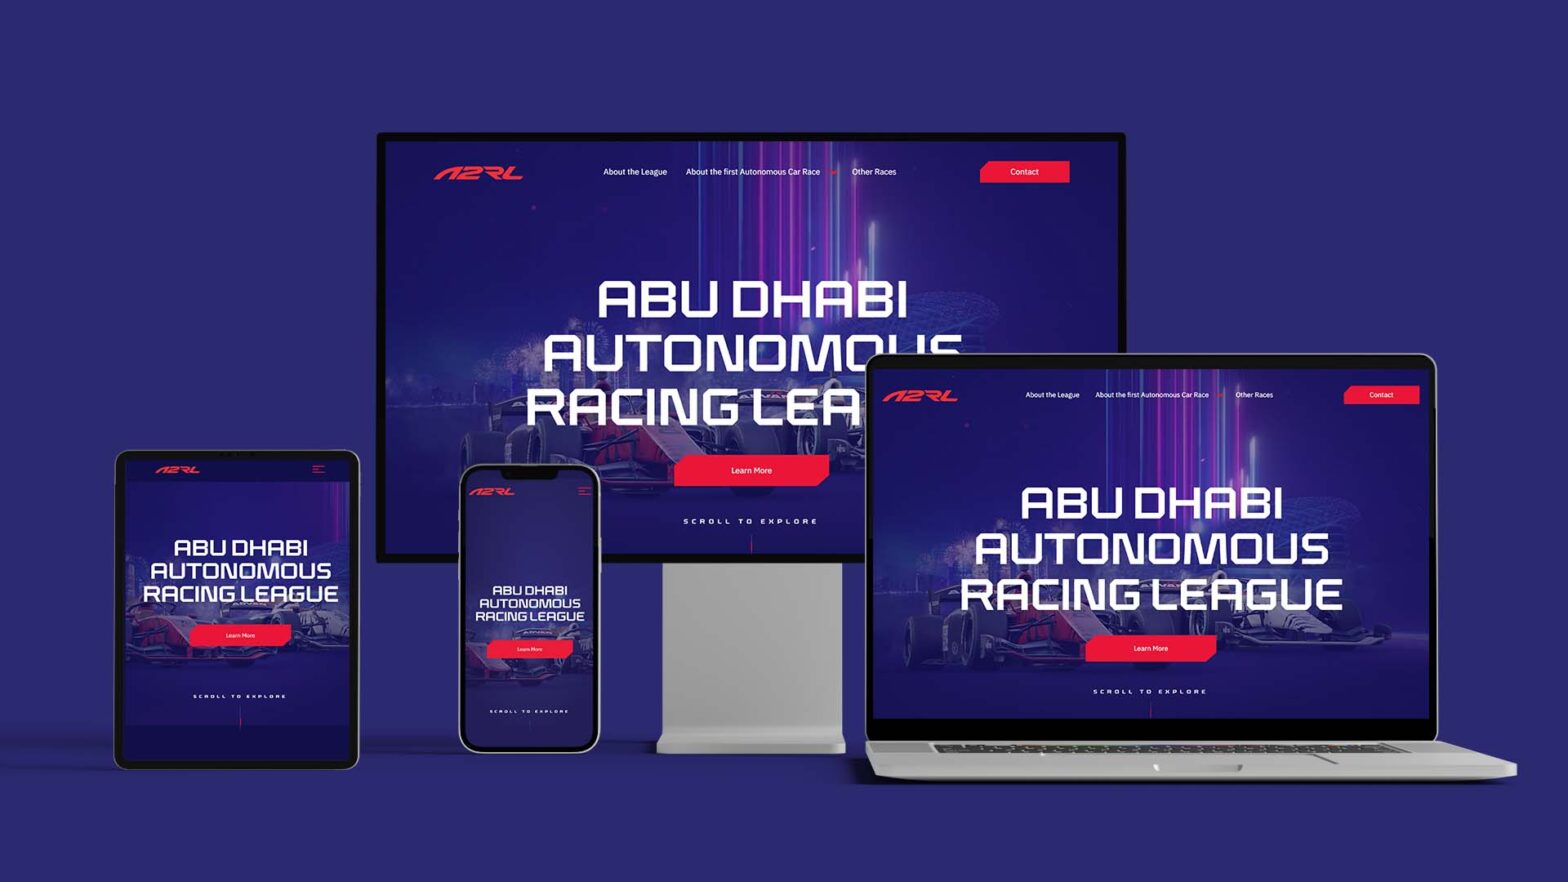 Digital presence for the Abu Dhabi Autonomous Racing League (A2RL)